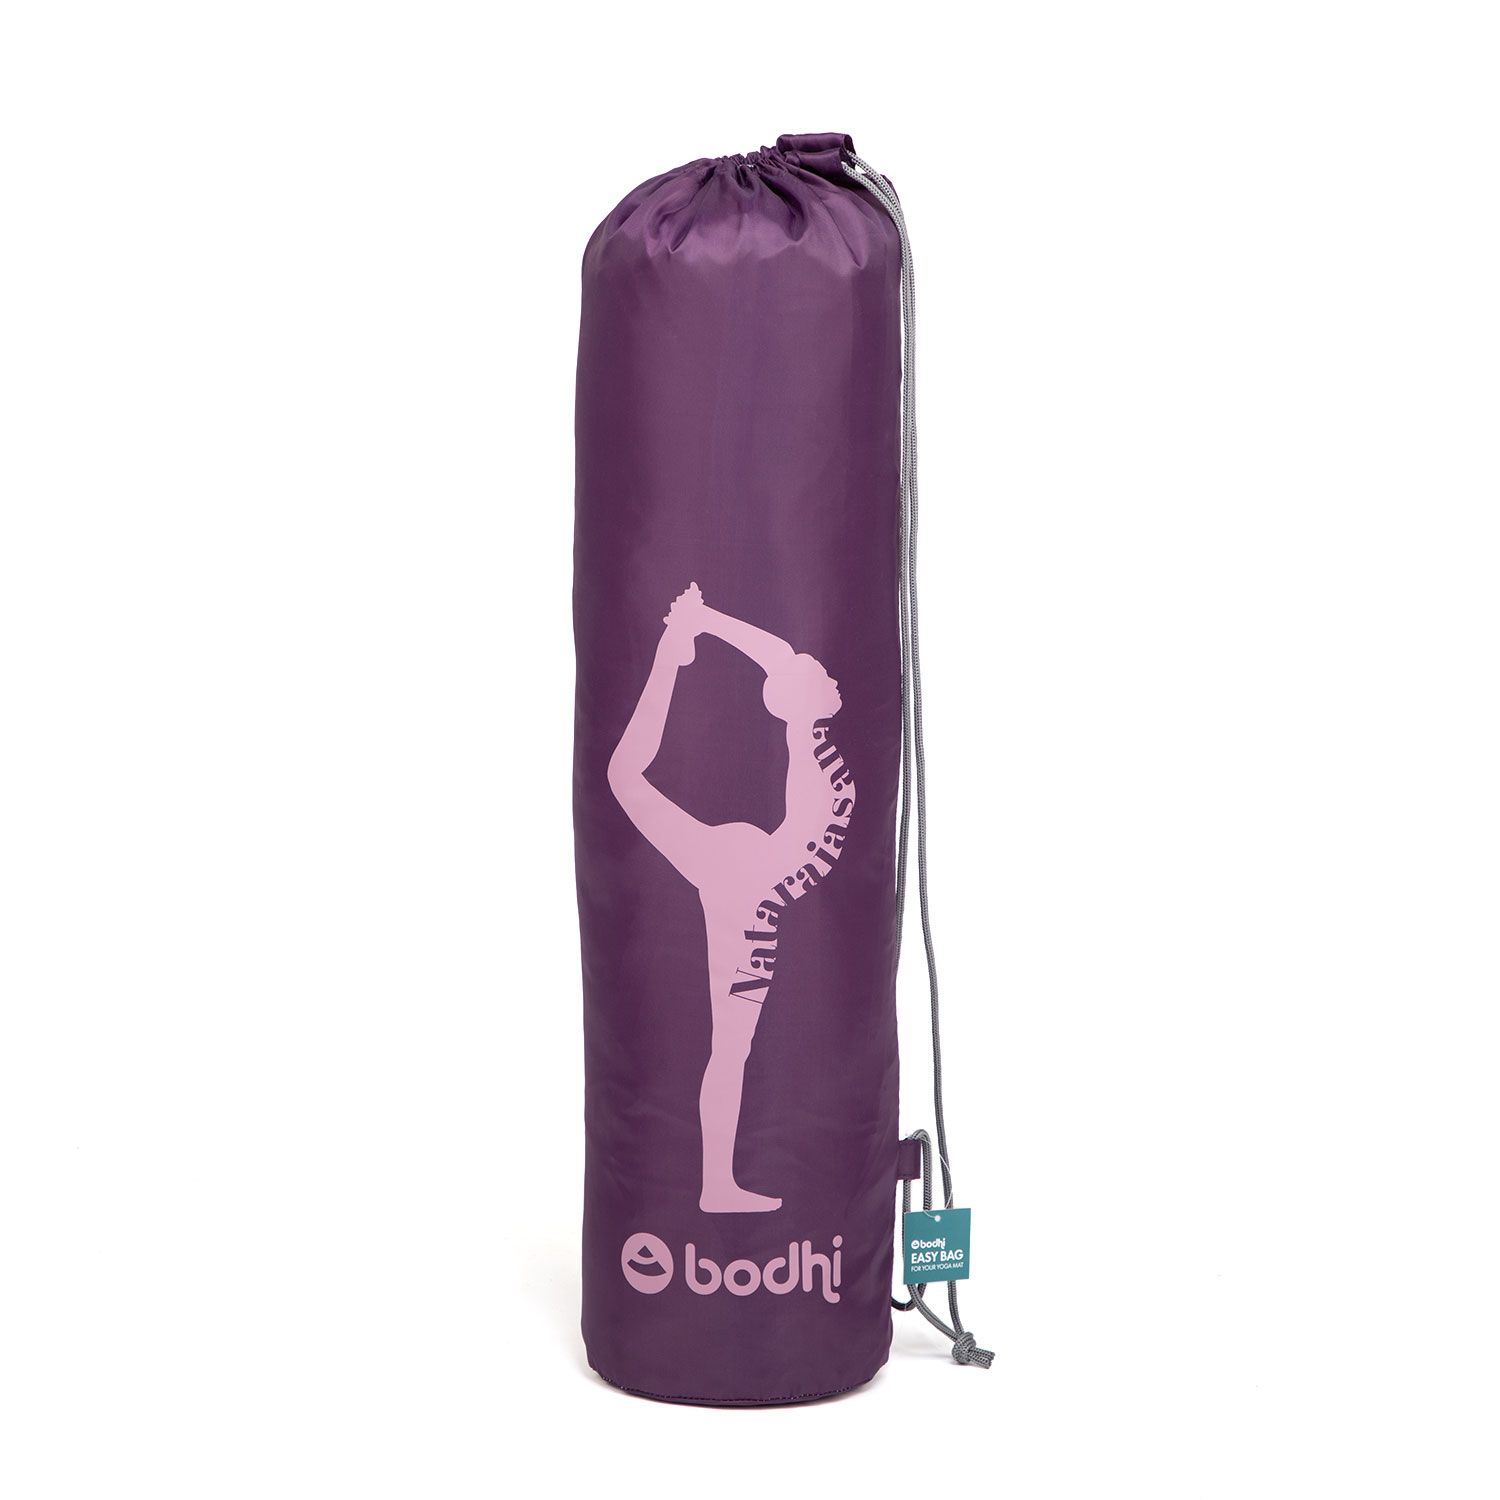 Easy Bag Yogamattentasche aus Polyester mit Print Natarajasana Aubergine (Blackberry Wine)